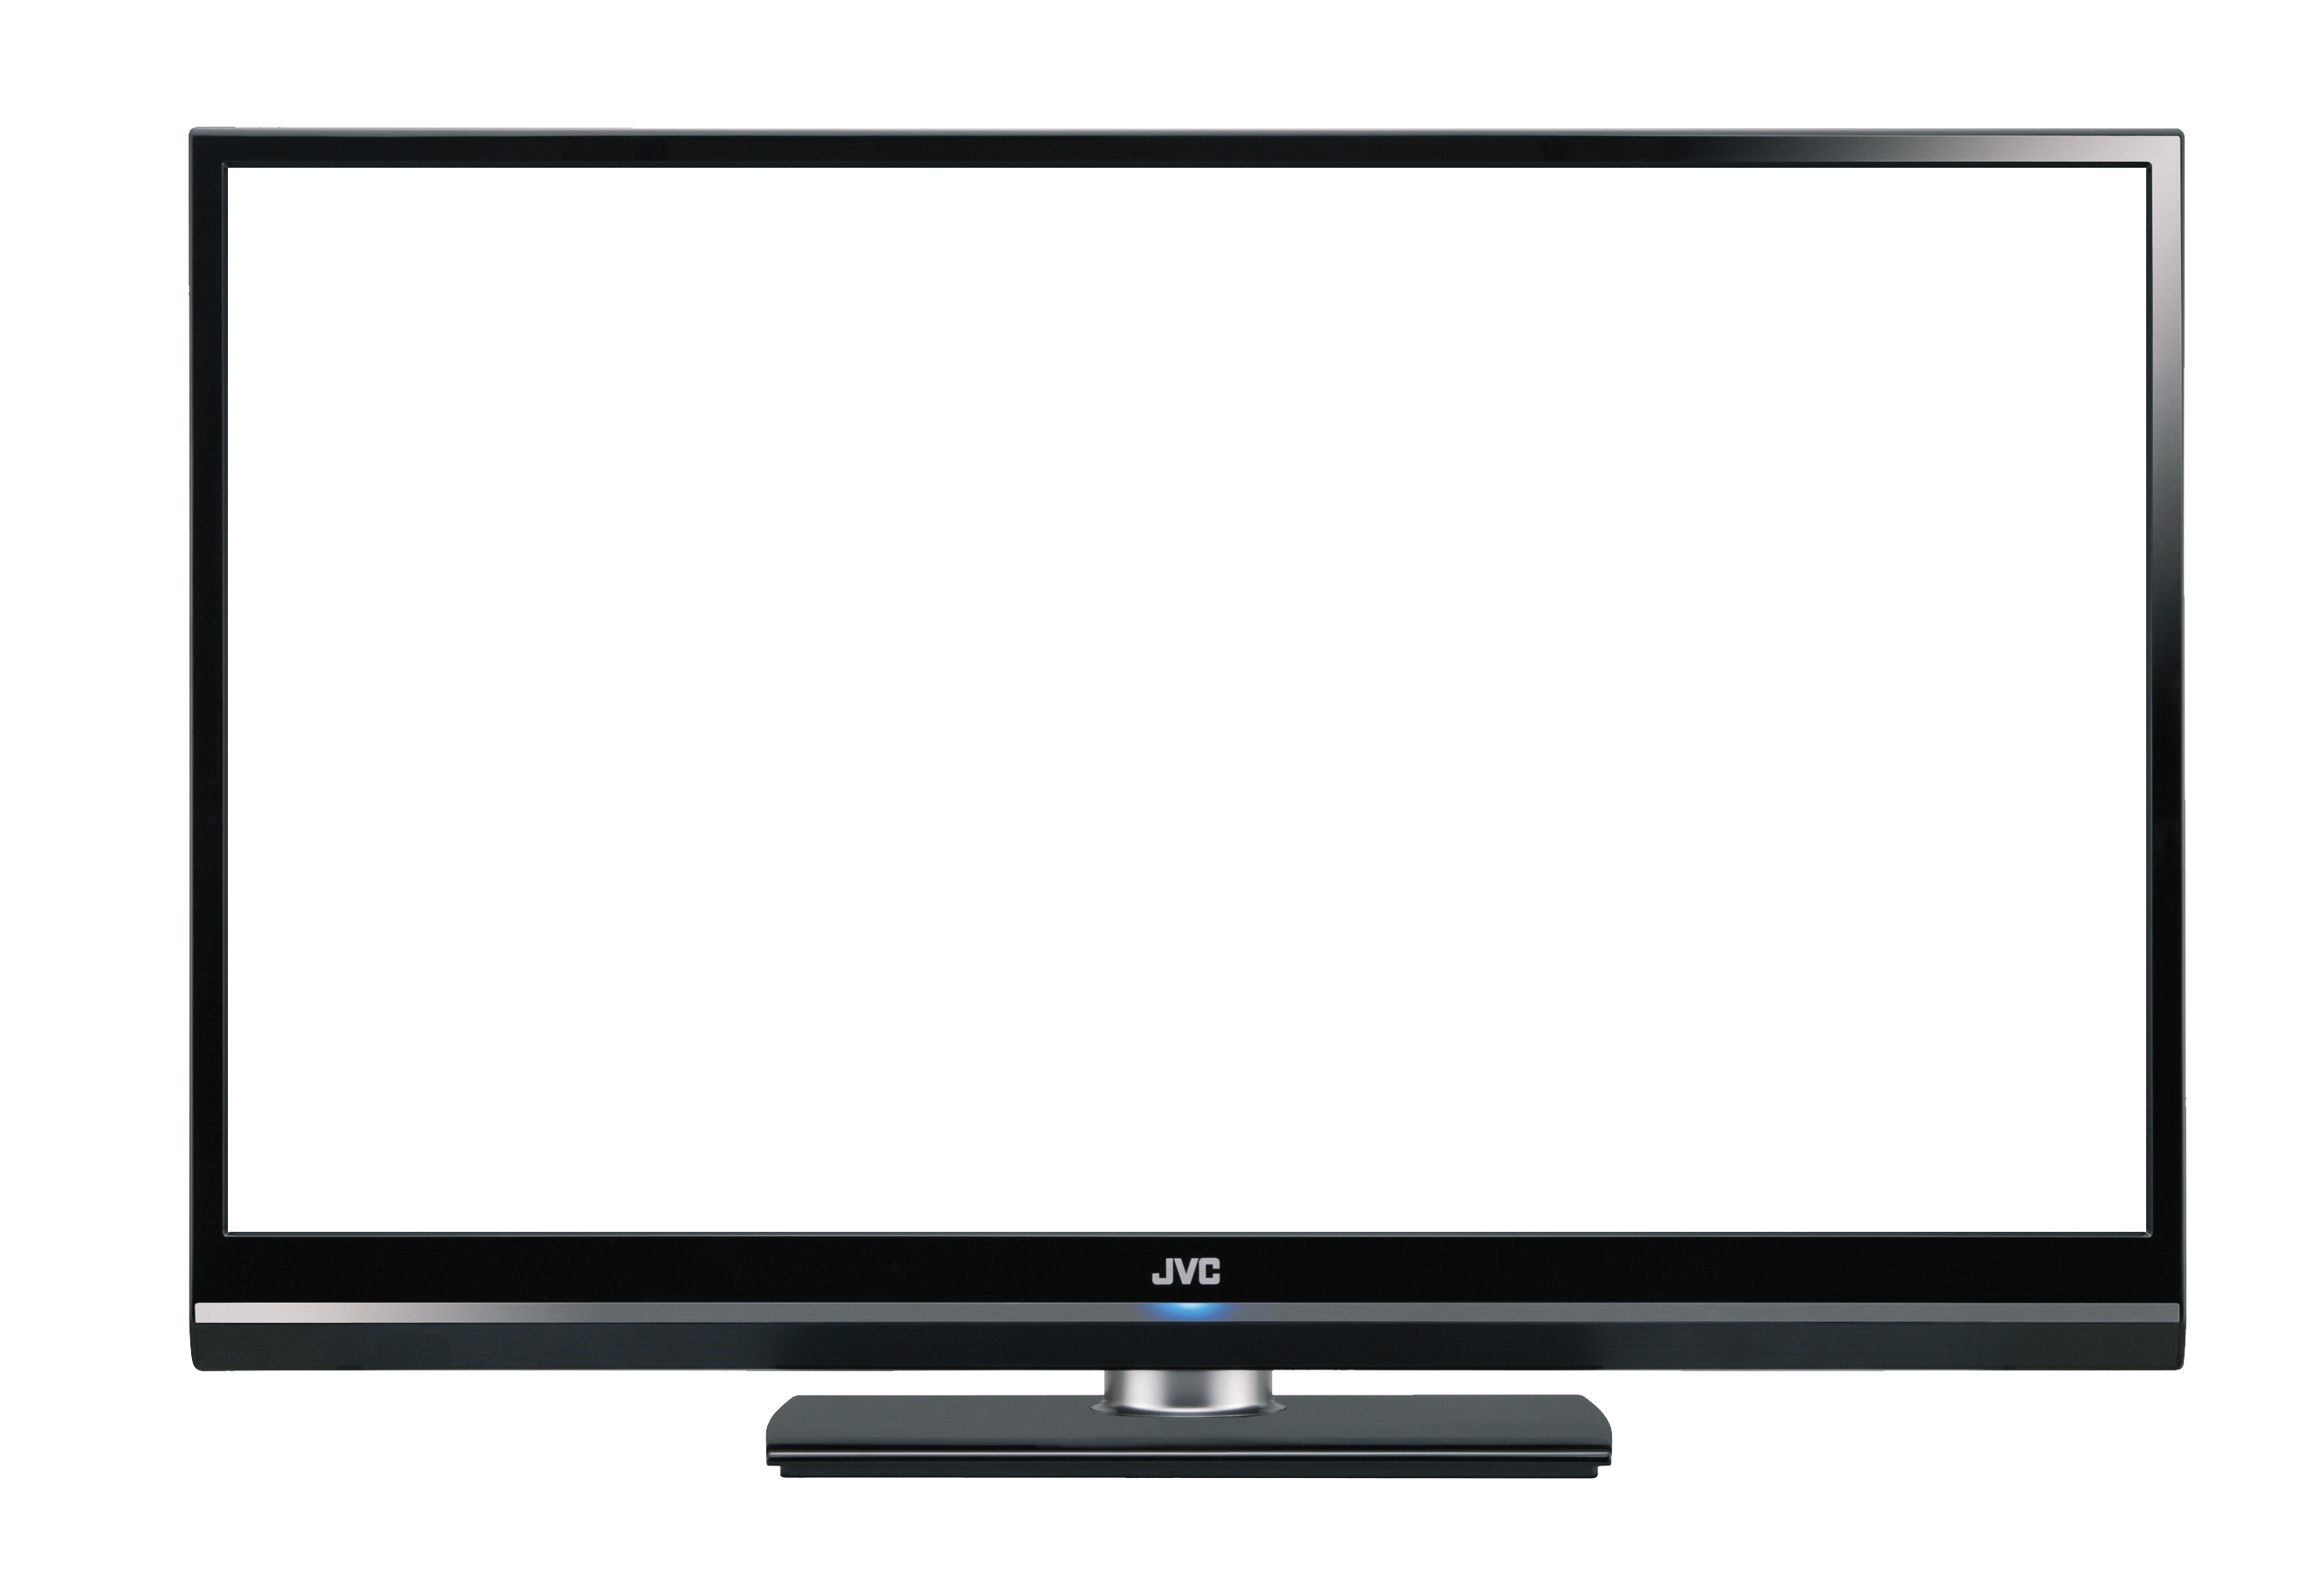 Картинка прозрачный экран. Телевизор с белым экраном. Телевизор с прозрачным экраном. Изображение на экране телевизора. Телевизор вектор прозрачный экран.